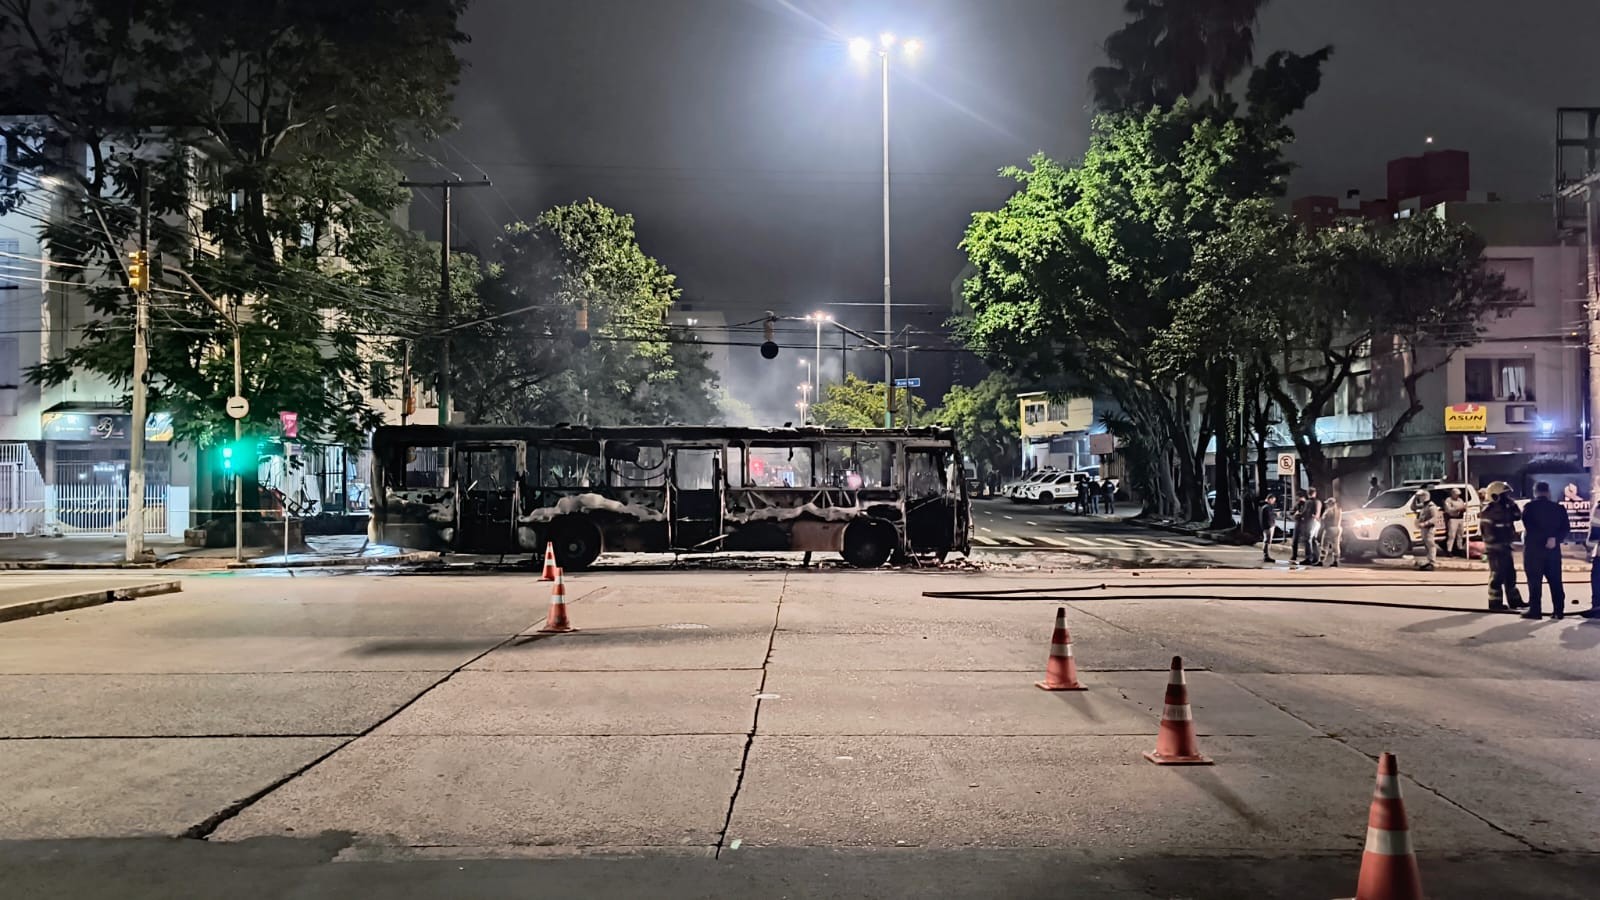 Morte de homem motivou protesto com incêndio de dois ônibus em Porto Alegre, diz polícia